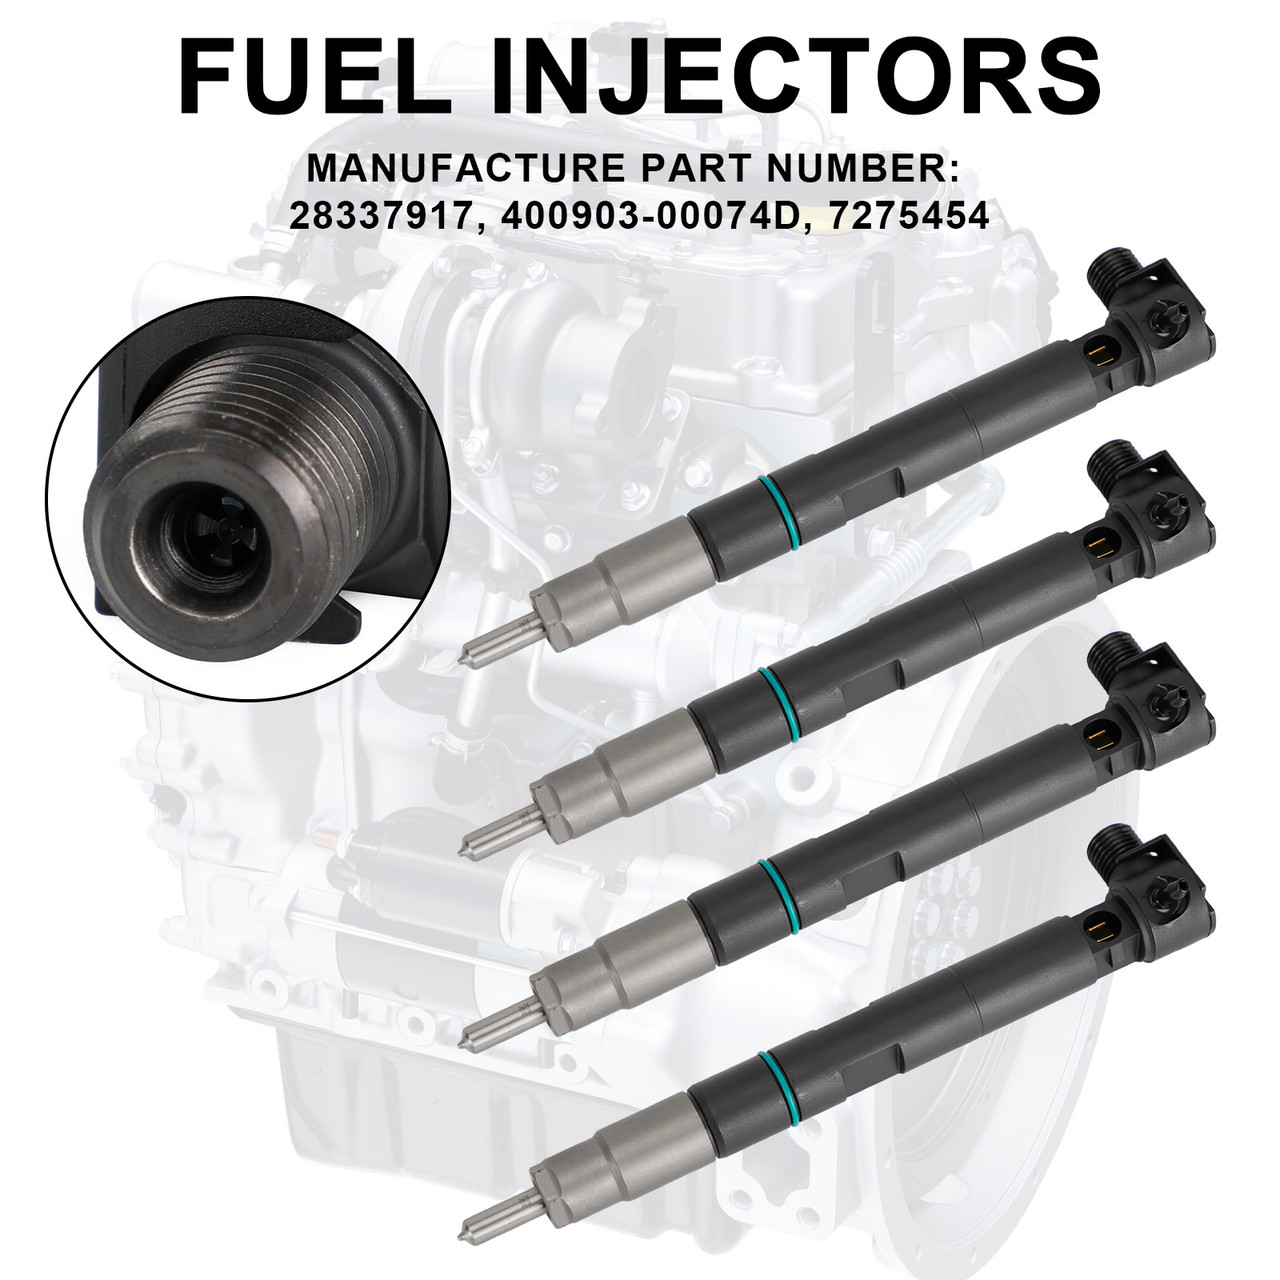 4PCS Fuel Injectors 400903-00074D fit Compact Track Loaders T450 T550 T590 T595 T630 28337917